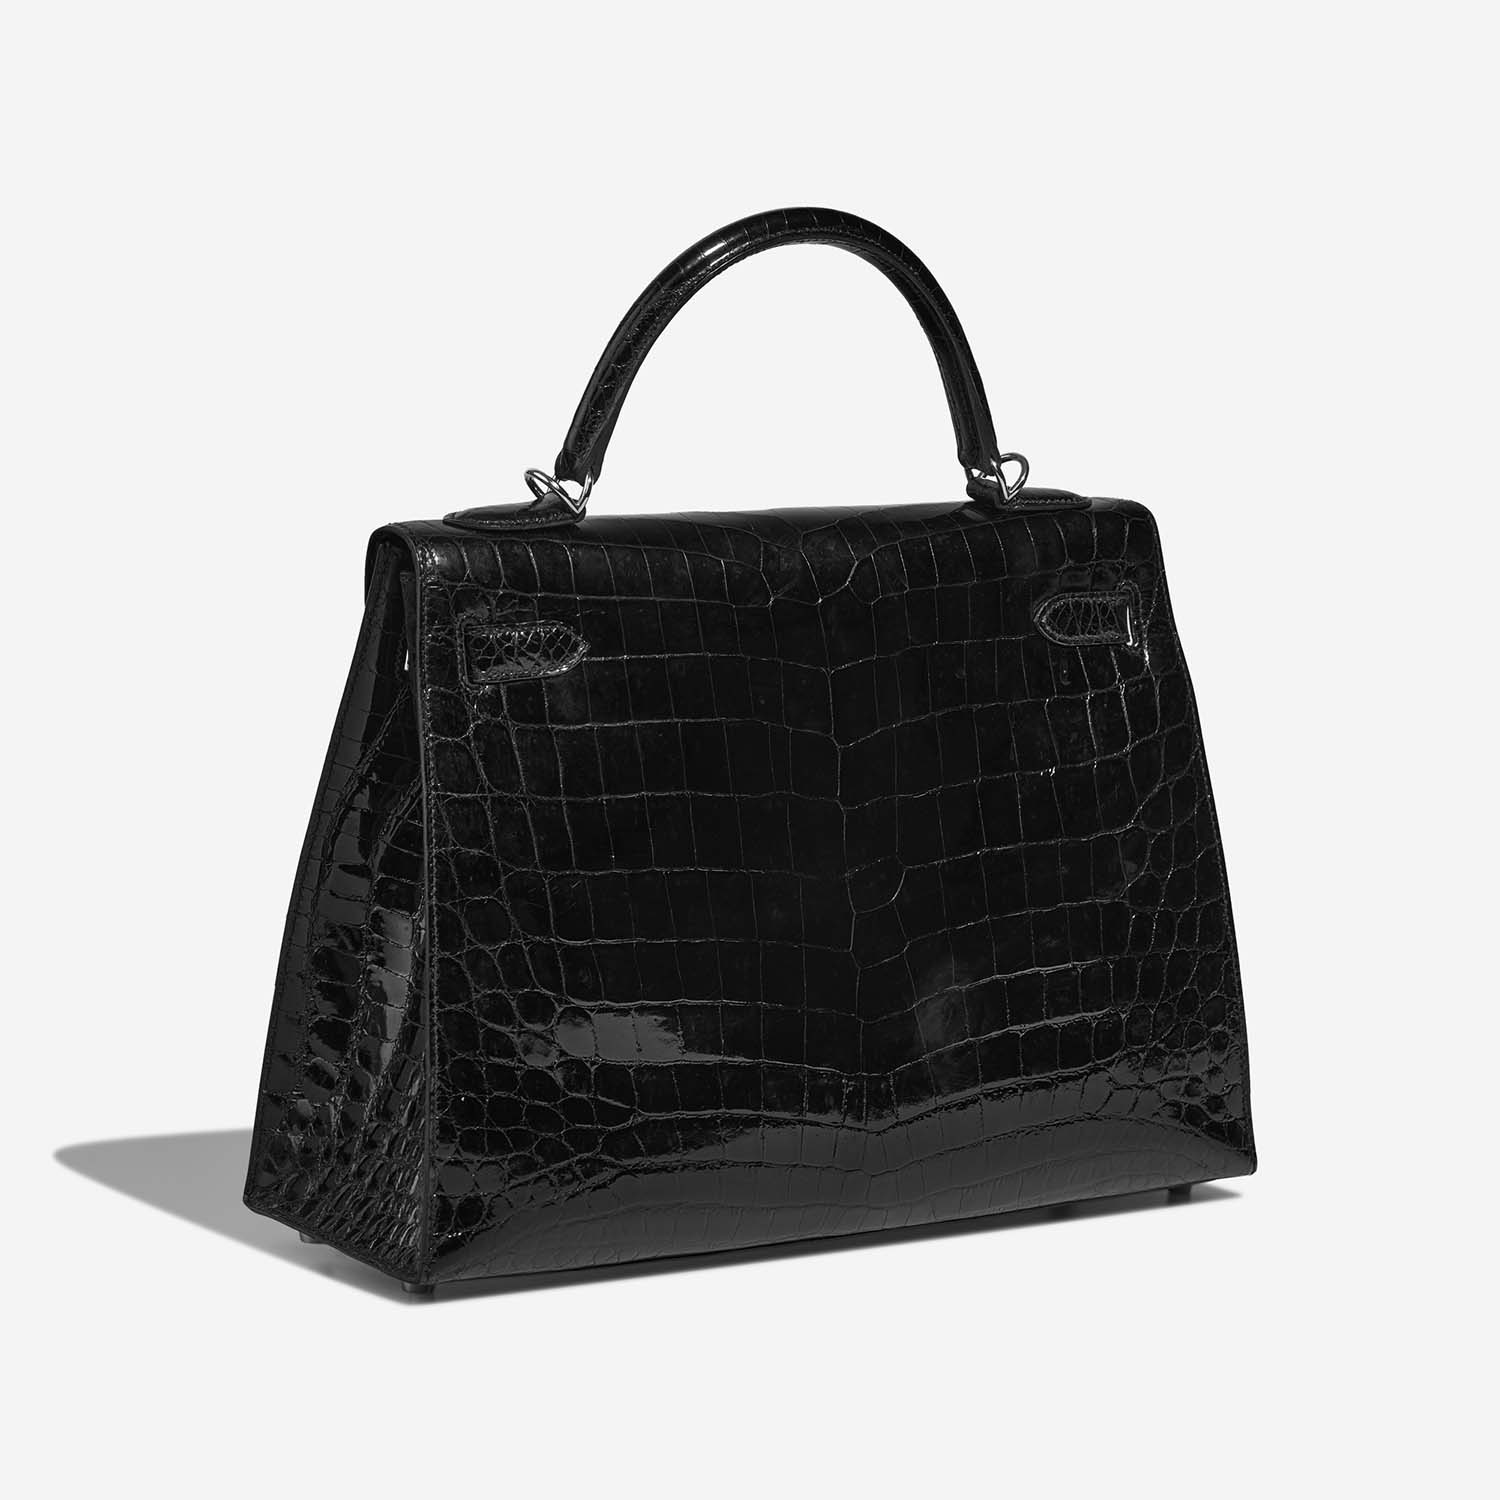 Hermès Kelly 32 Black Side Back | Verkaufen Sie Ihre Designer-Tasche auf Saclab.com